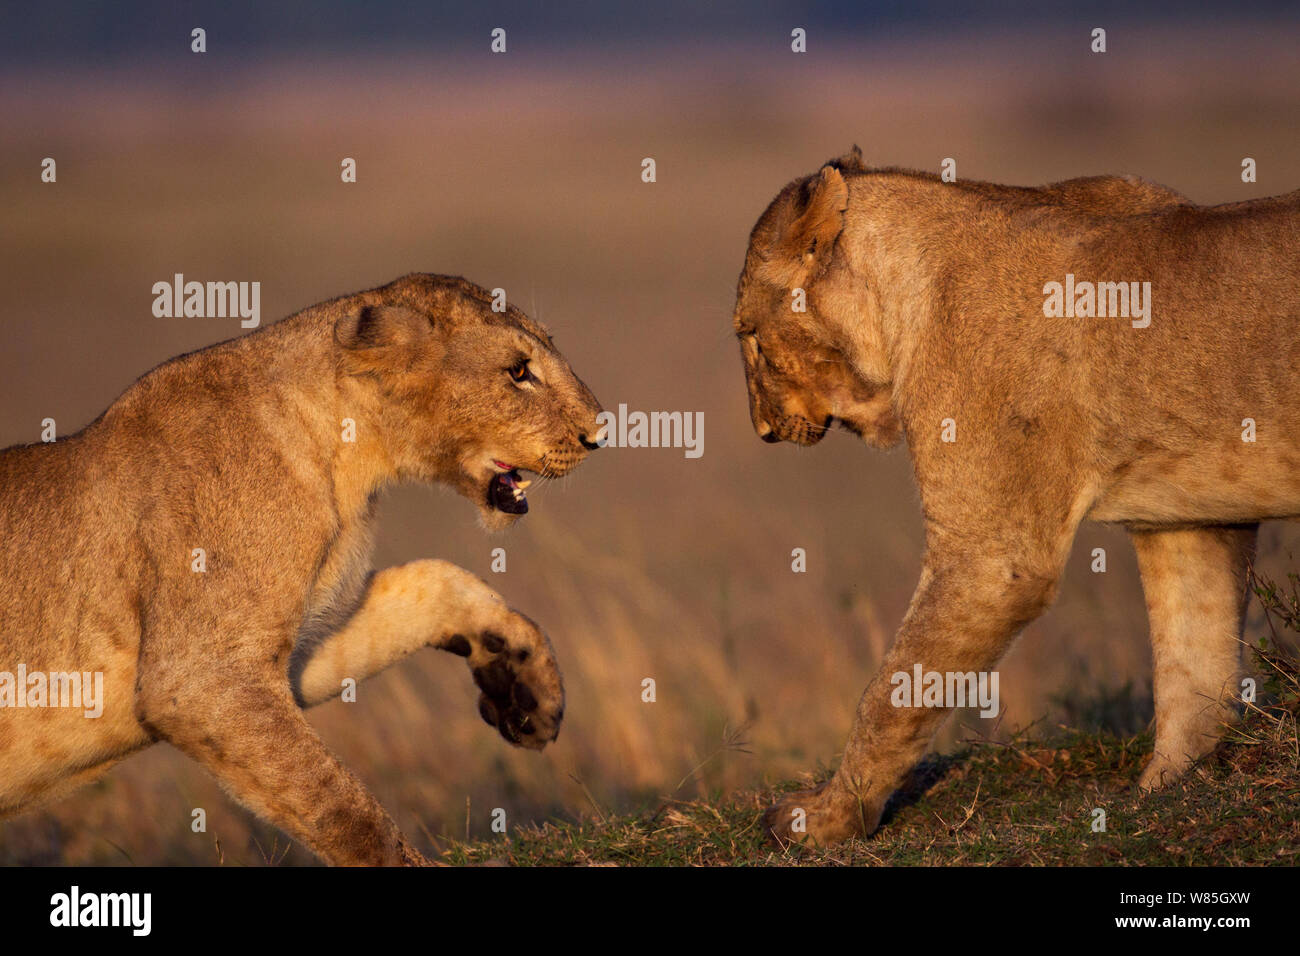 Lion (Panthera leo) les mineurs de jouer. Masai Mara National Reserve, Kenya. Banque D'Images